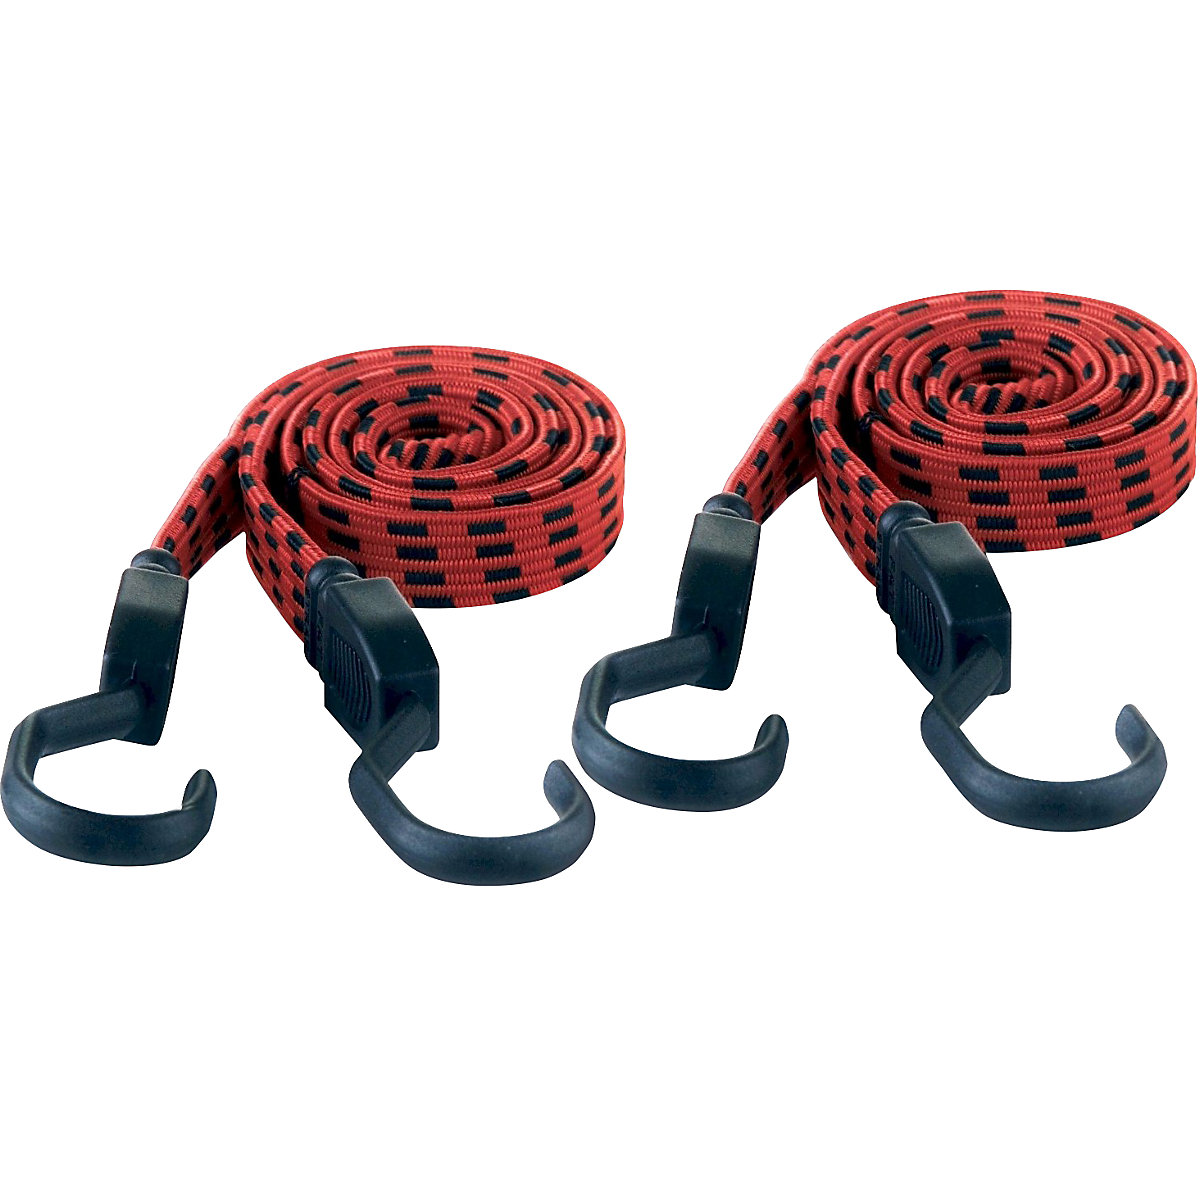 Cinghia di fissaggio in gomma KRANE: nero / rosso, conf. da 2 pezzi